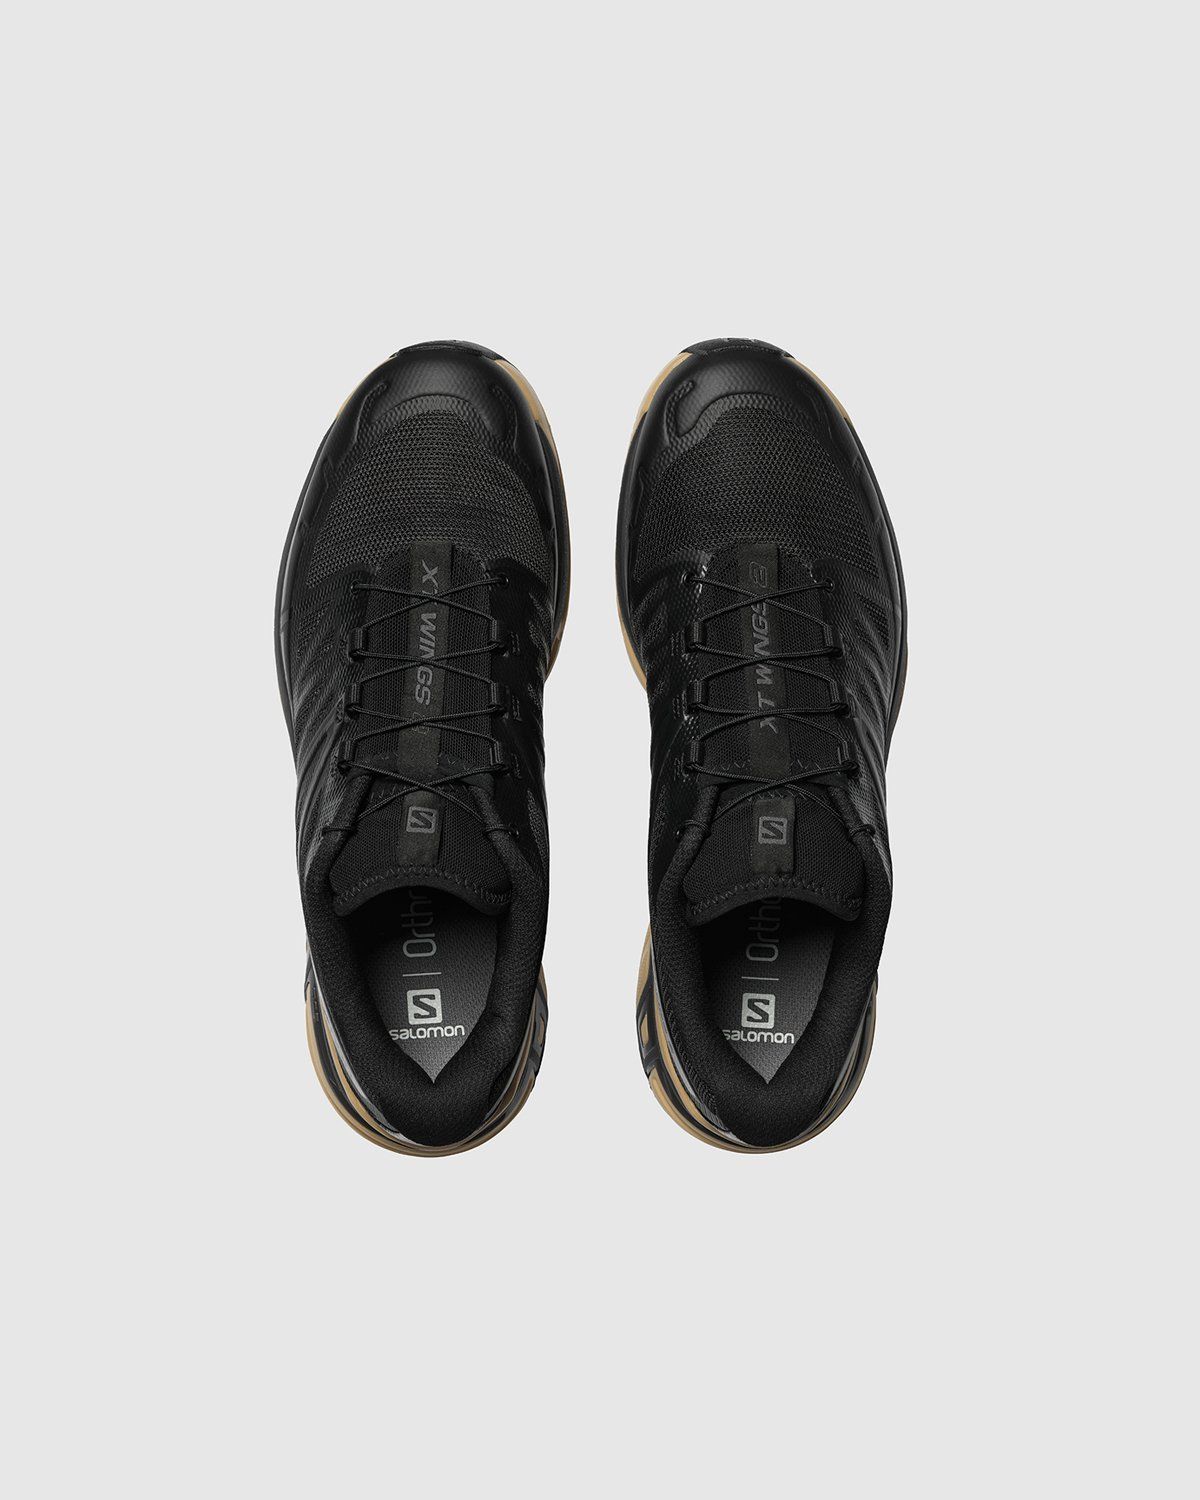 Salomon – XT-WINGS 2 ADVANCED Black/Safari/Magnet - Low Top Sneakers - Black - Image 3